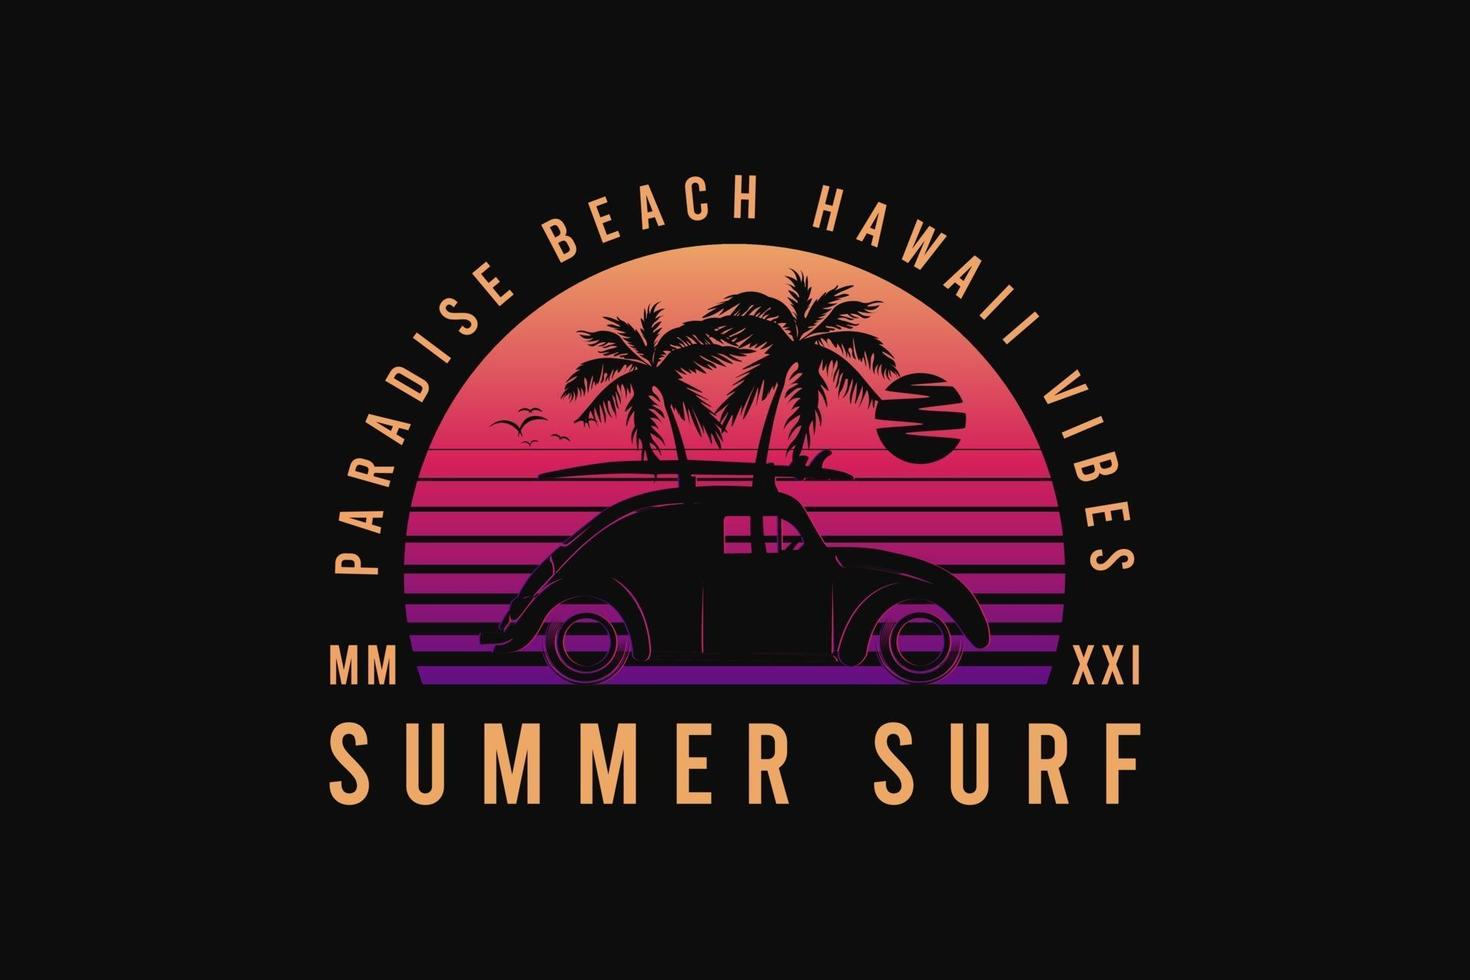 surf de verano, silueta retro estilo años 80 vector